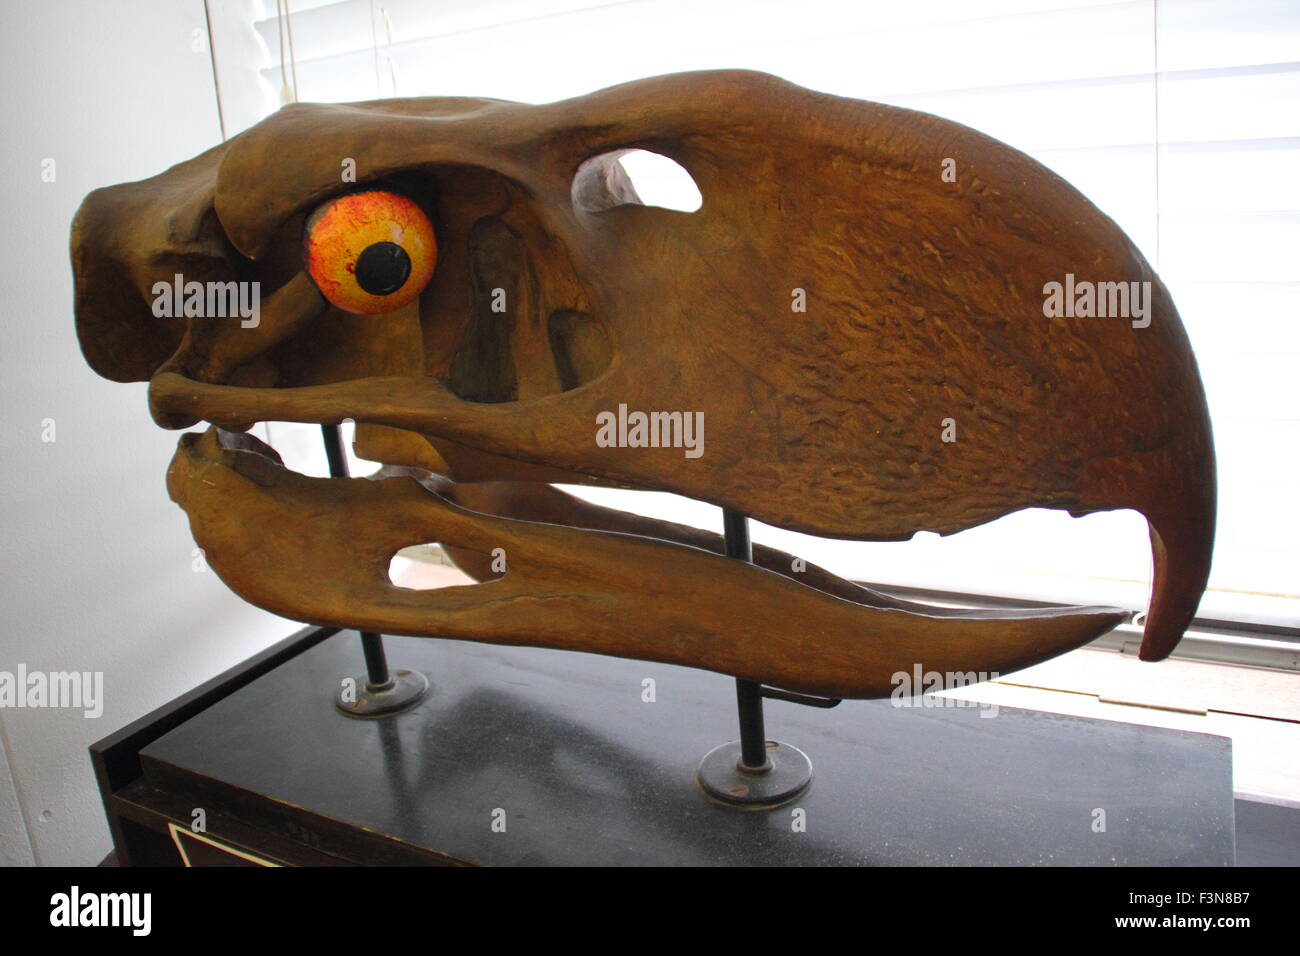 Ein Modell für die Giganticskull ein "Terror-Vogel" angezeigt in der Alfred Denny Museum, Universität von Sheffield, England, UK Stockfoto